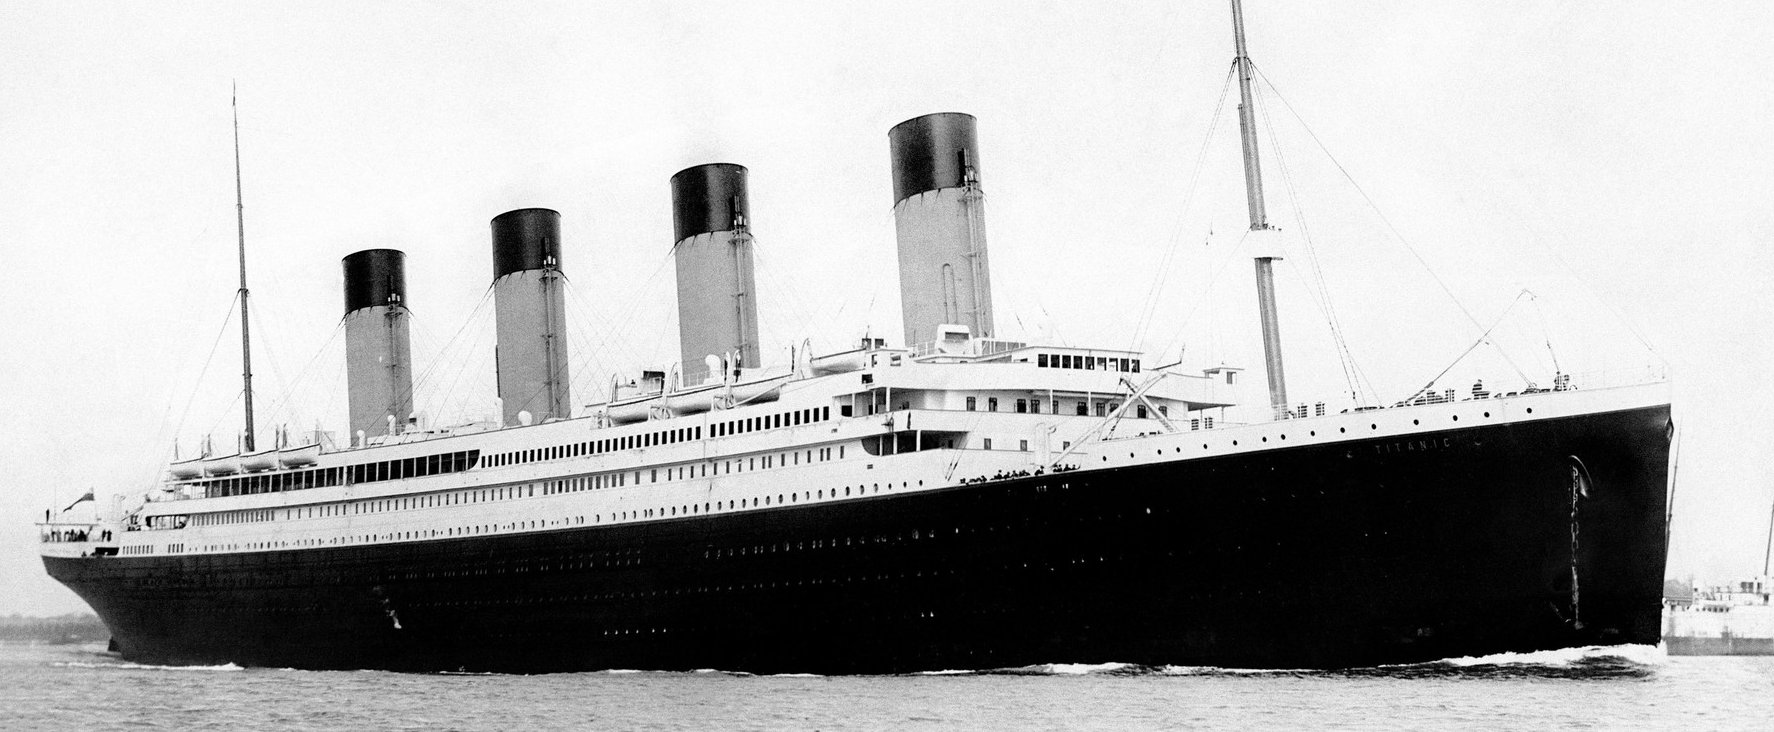 A Titanic leggazdagabb női utasának halála a mai napig megfejtetlen, még a tapasztalt történészeknek is feladja a leckét